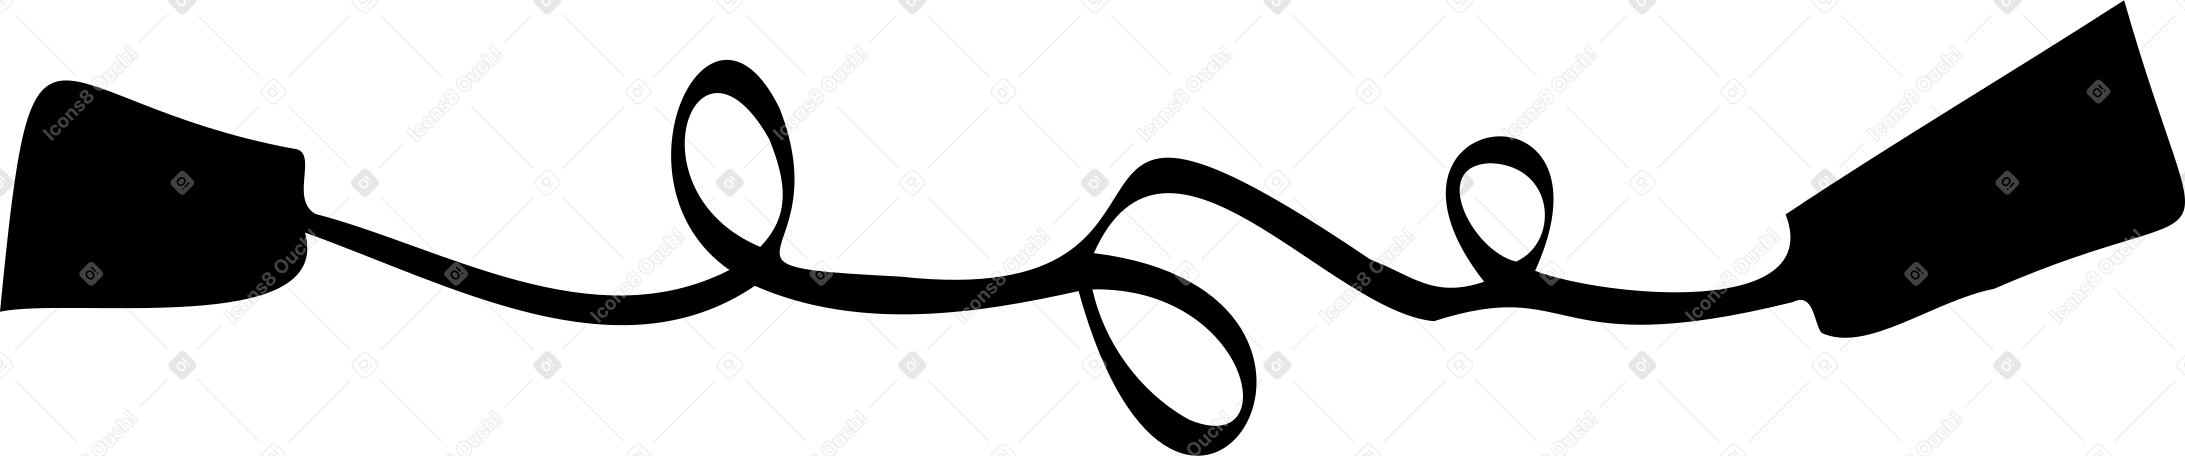 Телефон из консервной банки в PNG, SVG